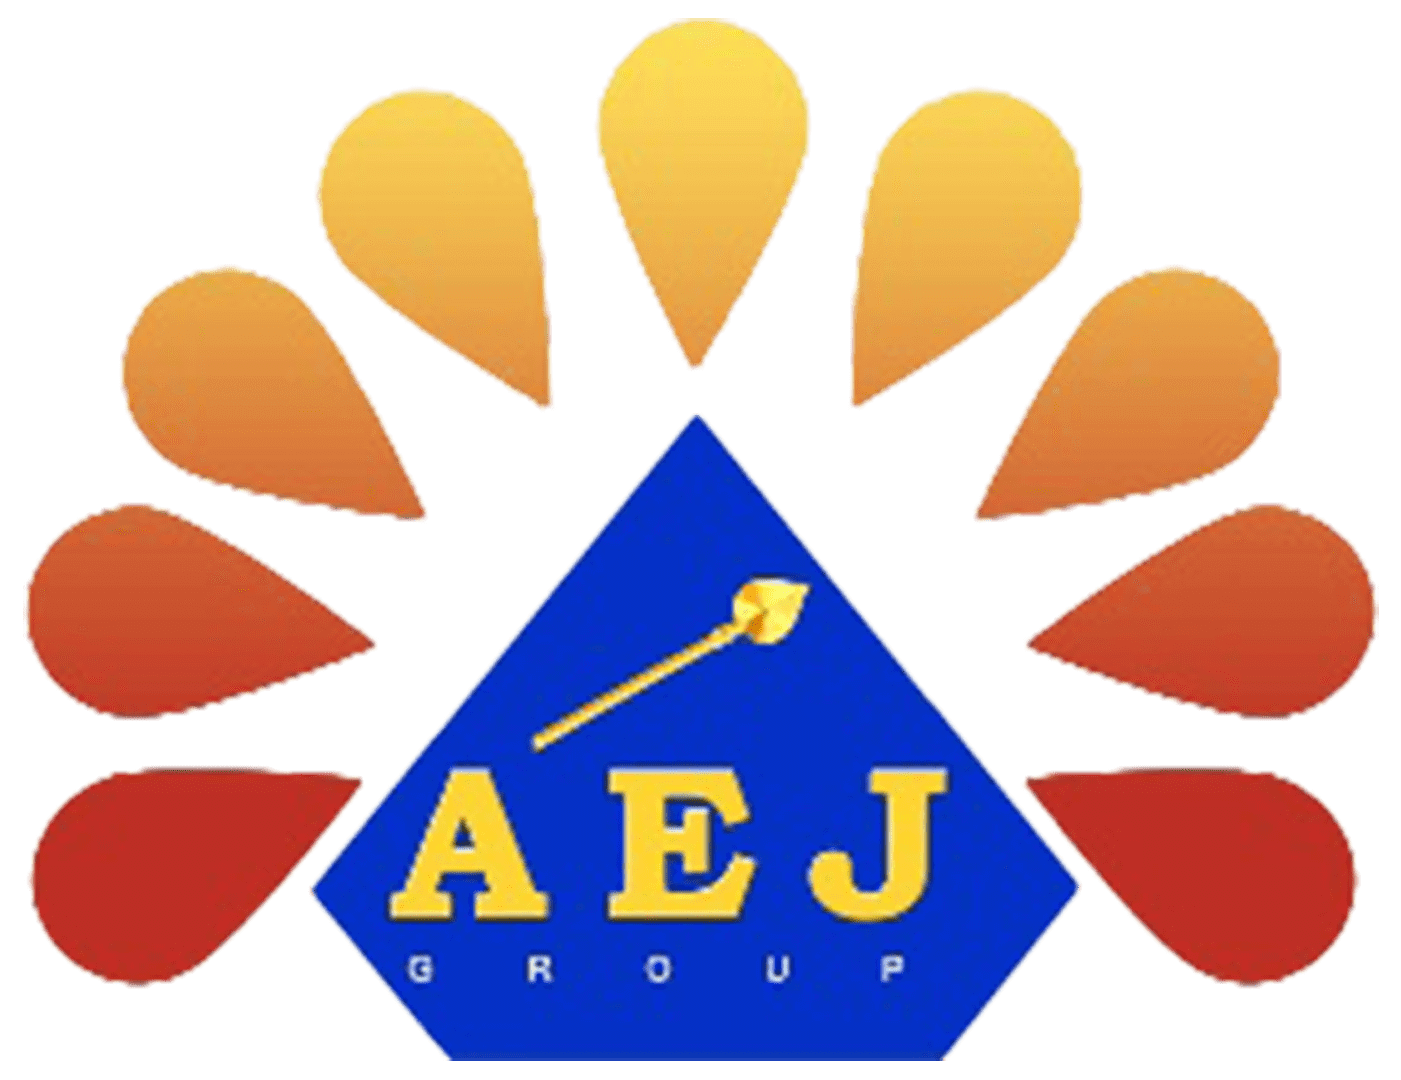 AEJ Group